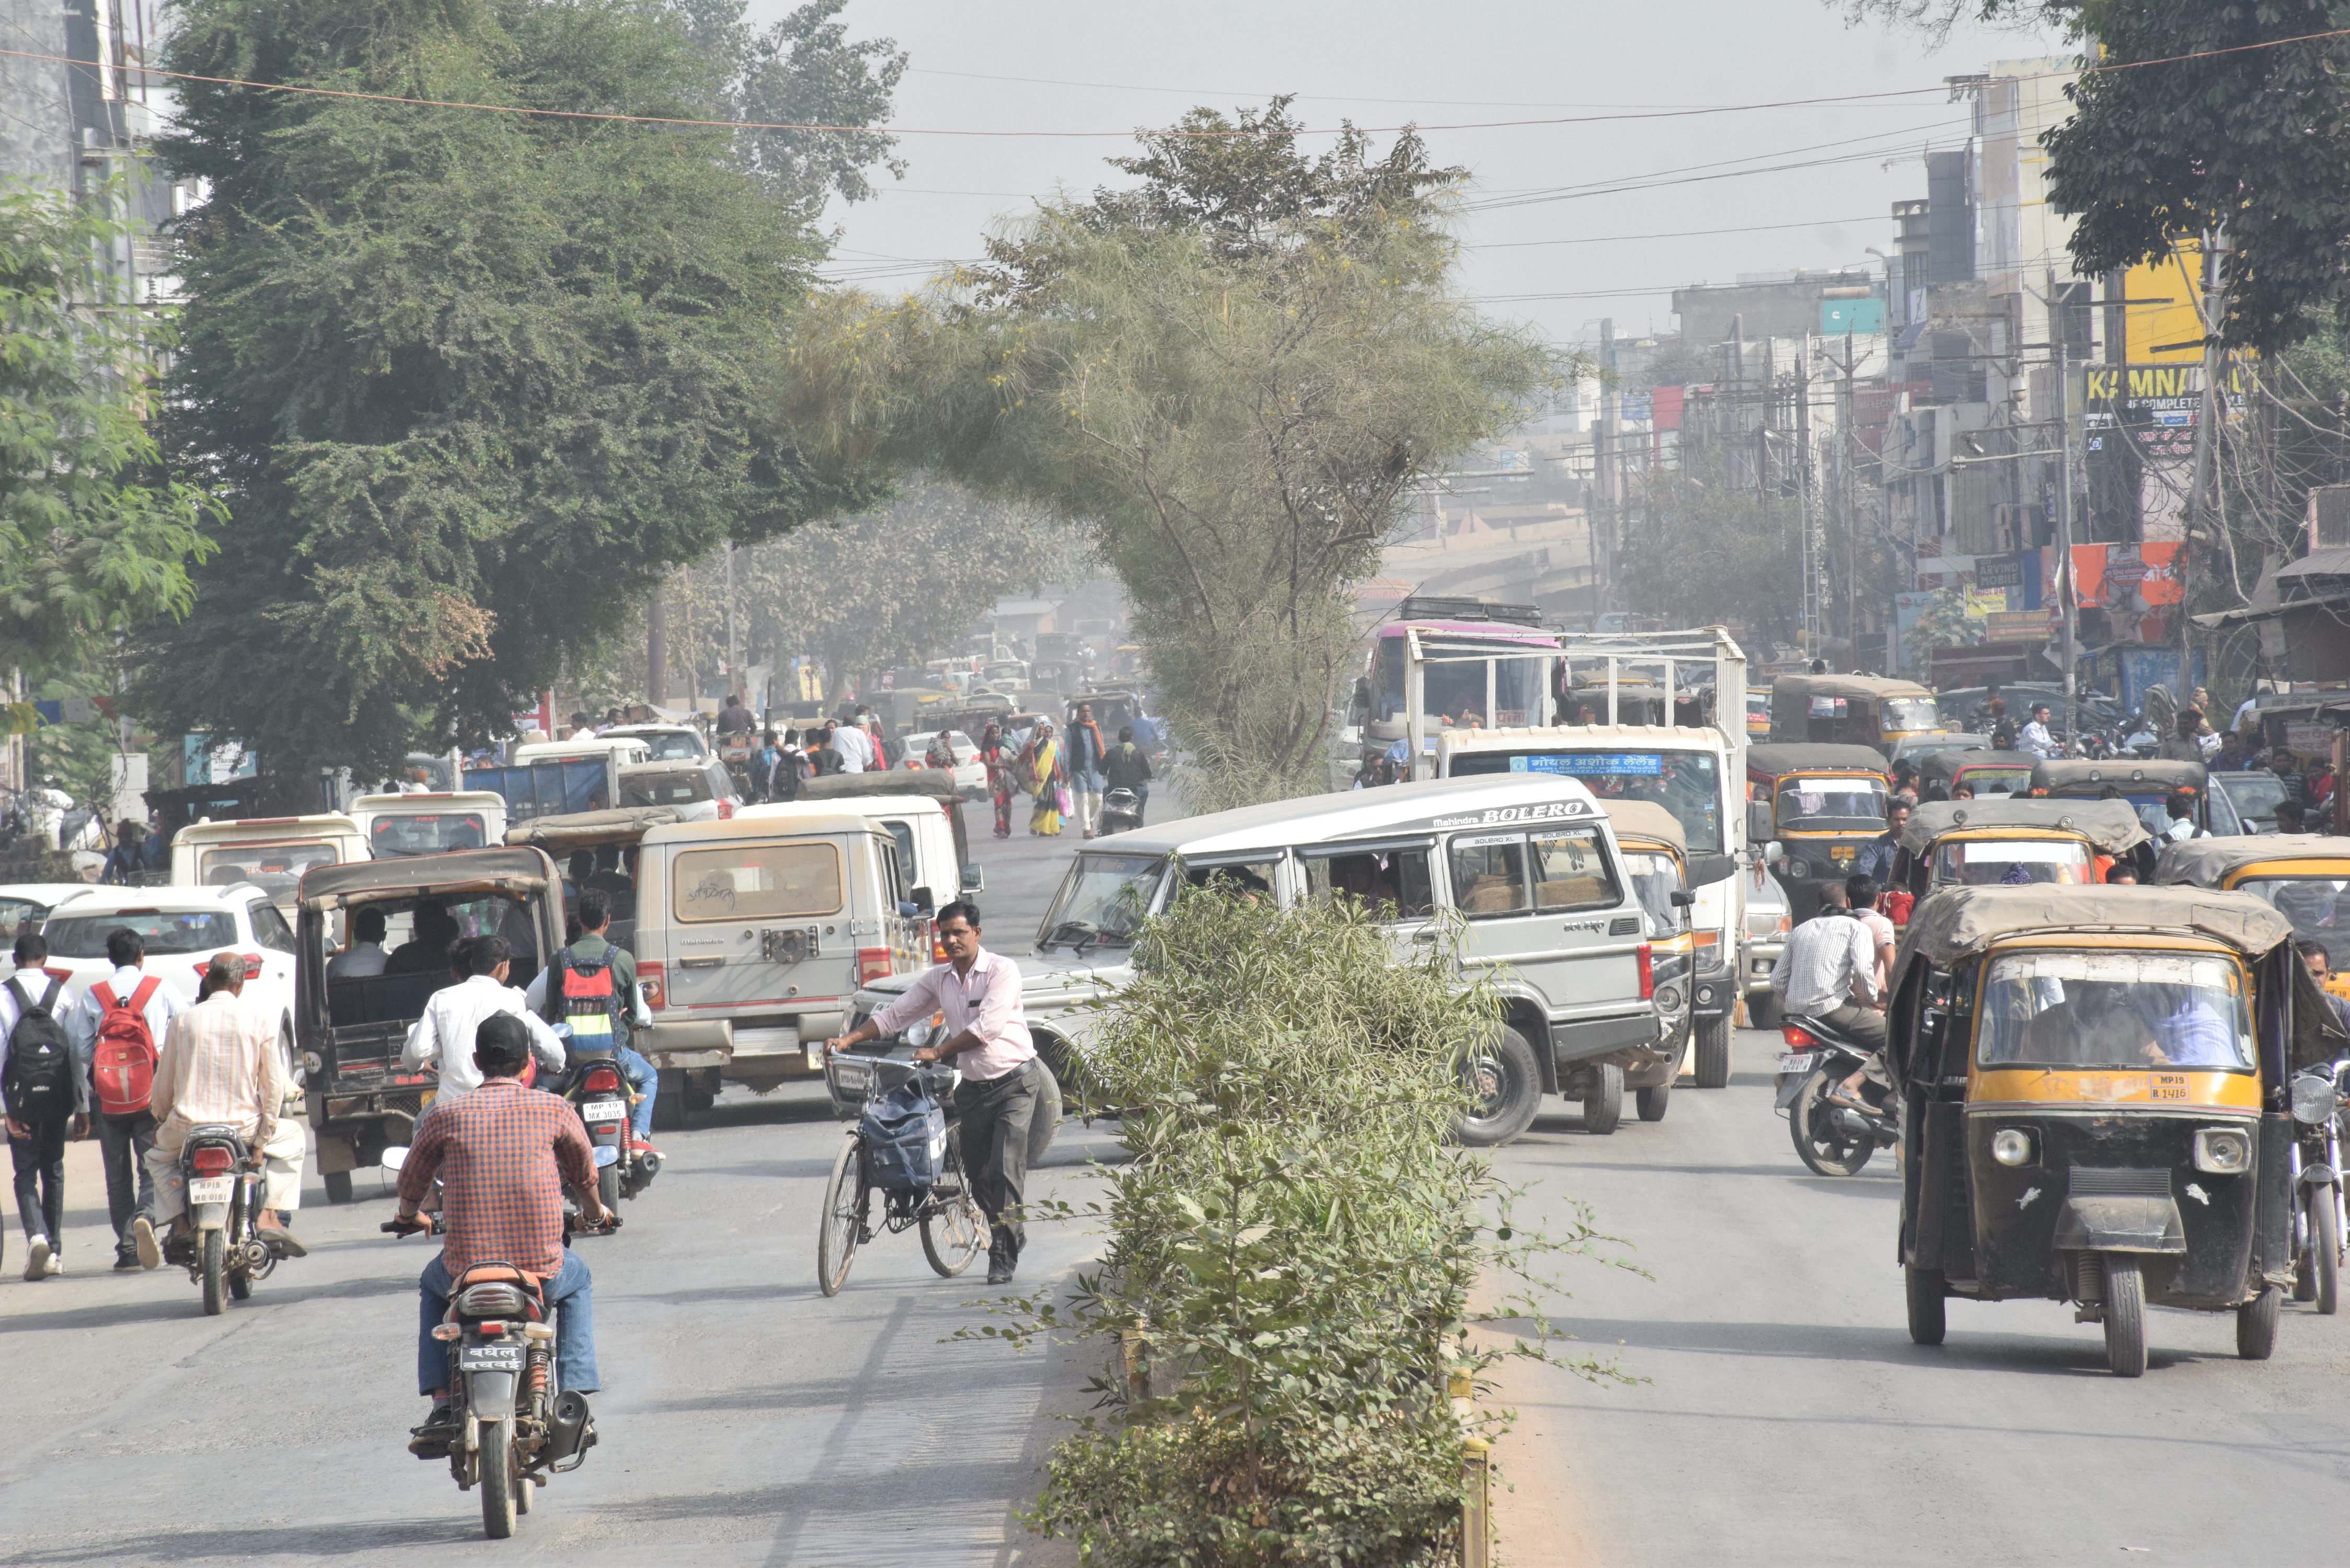 City of Satna in Jam Jham, Seven U-Turns in one km